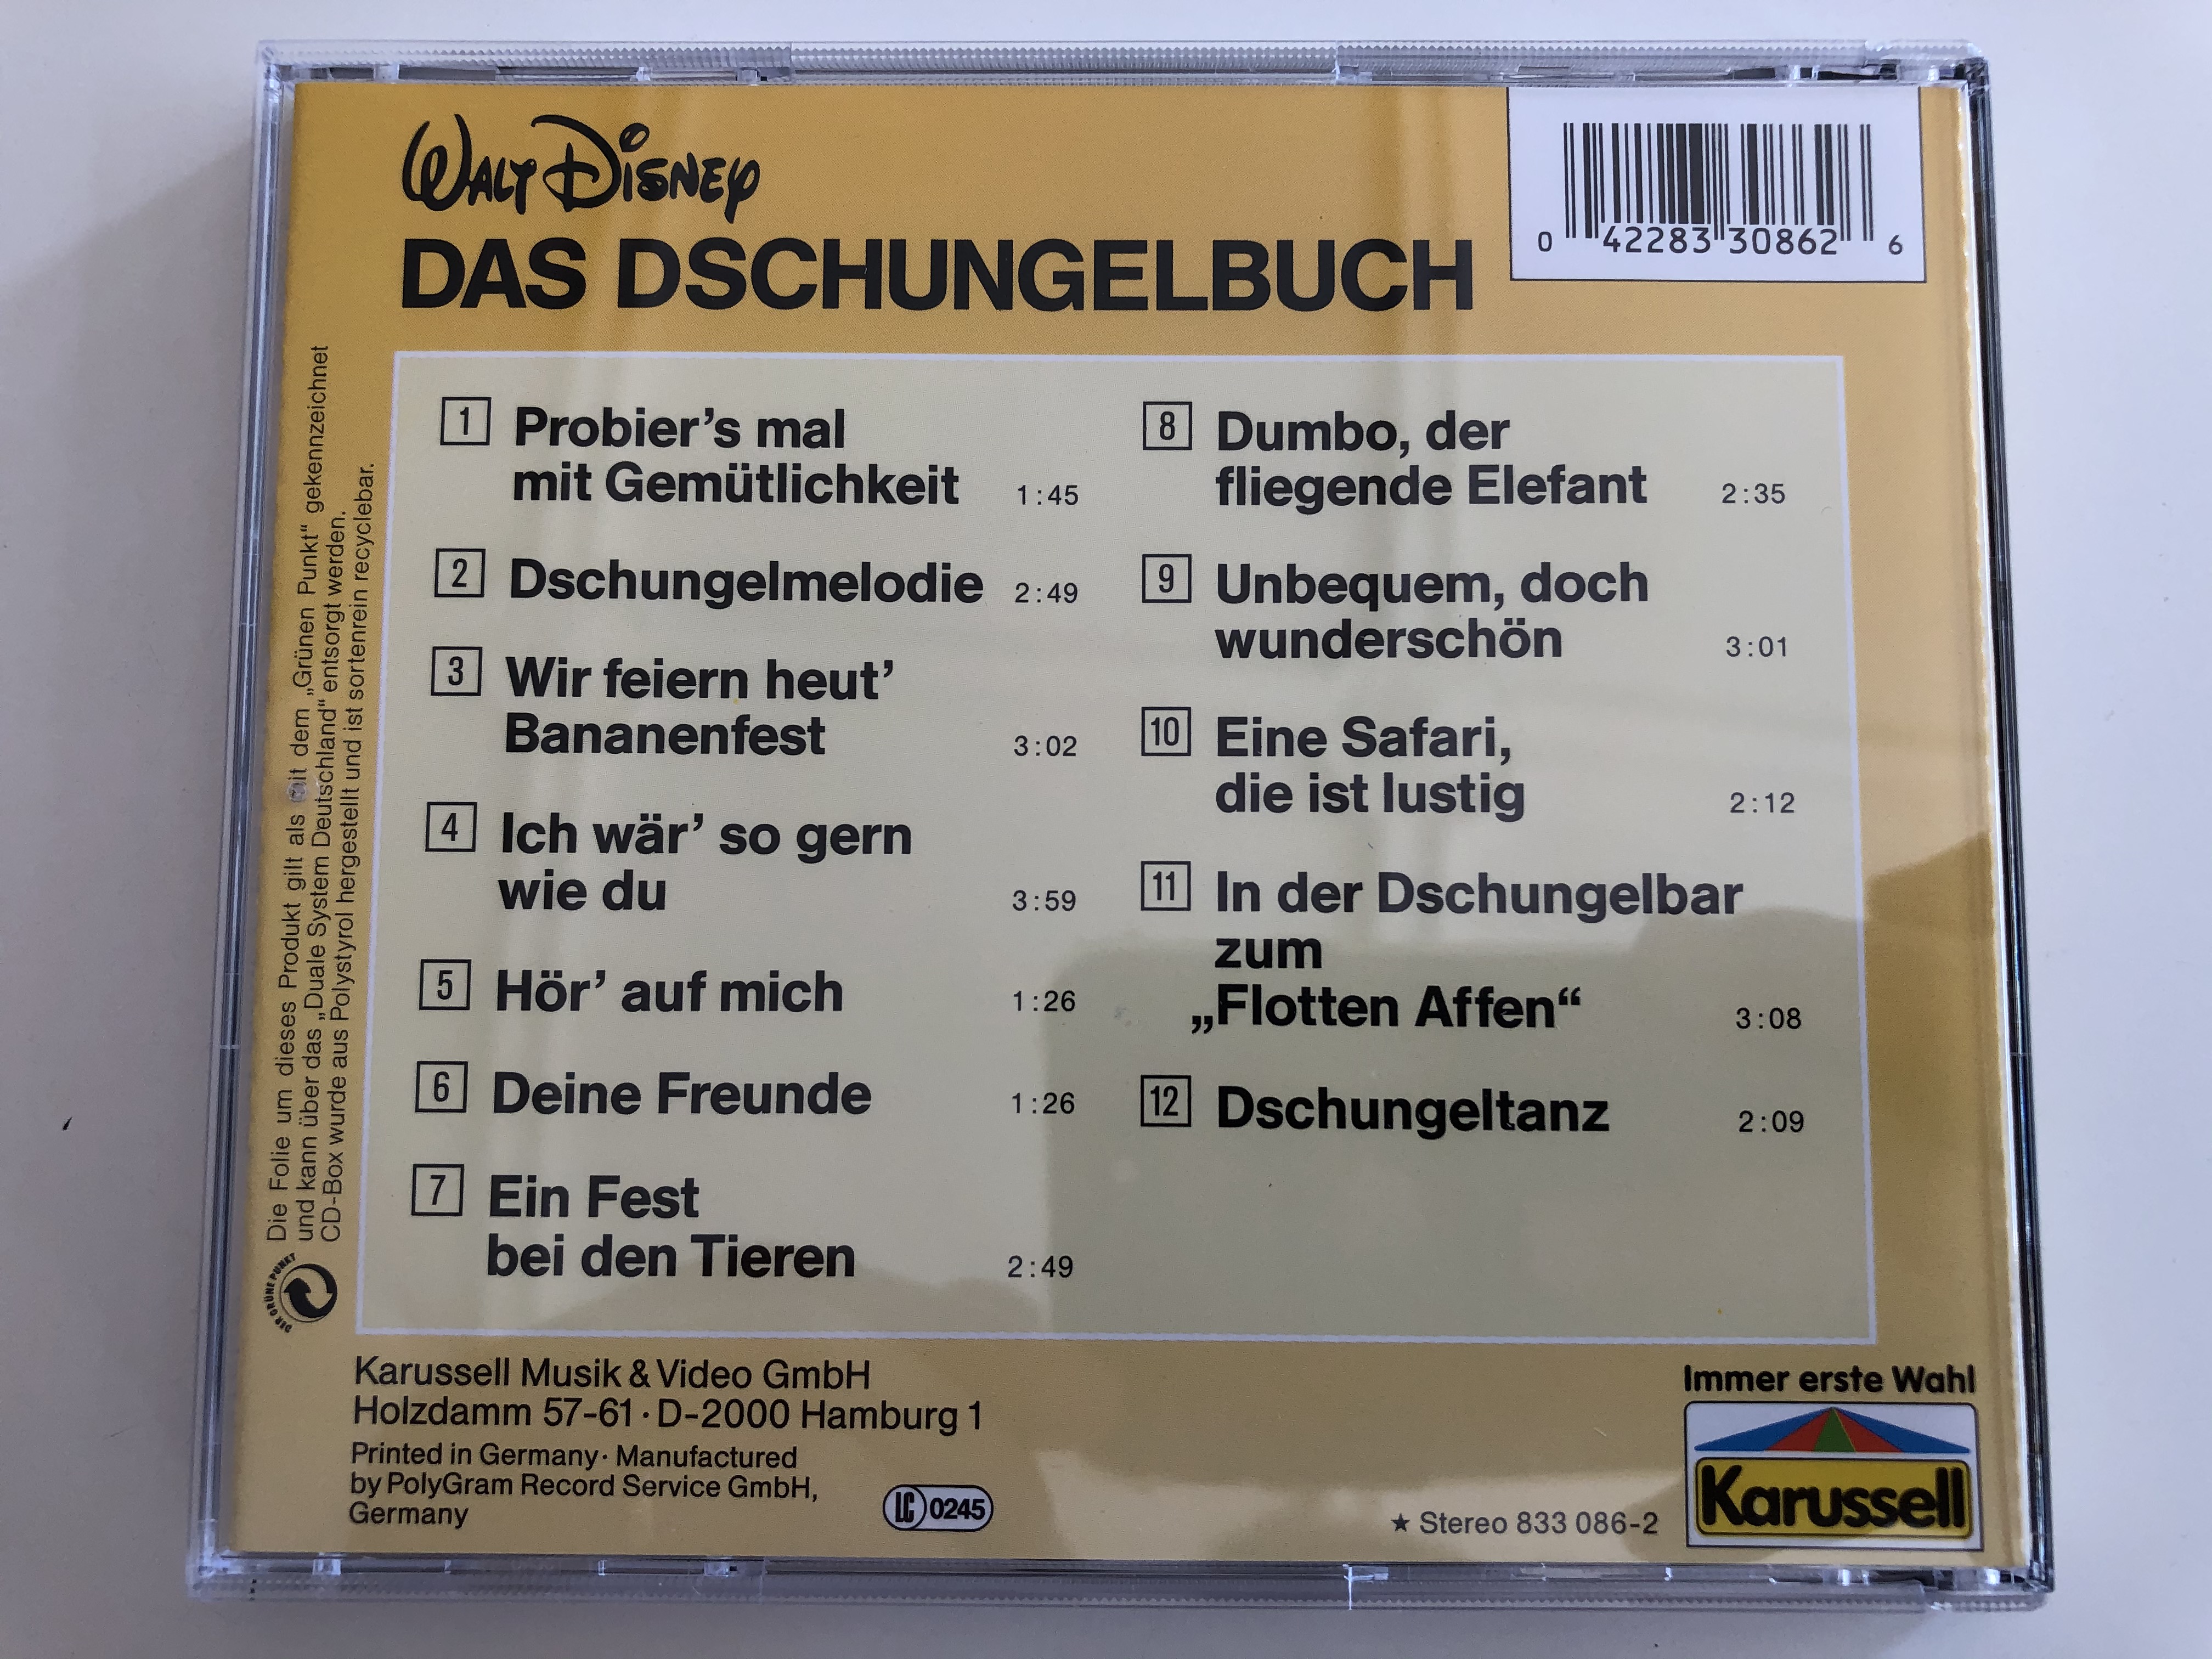 walt-disney-s-das-dschungel-buch-originalmelodien-aus-dem-gleichnamigen-film-und-weiter-dschungel-lieder-karussell-audio-cd-stereo-833-086-2-4-.jpg